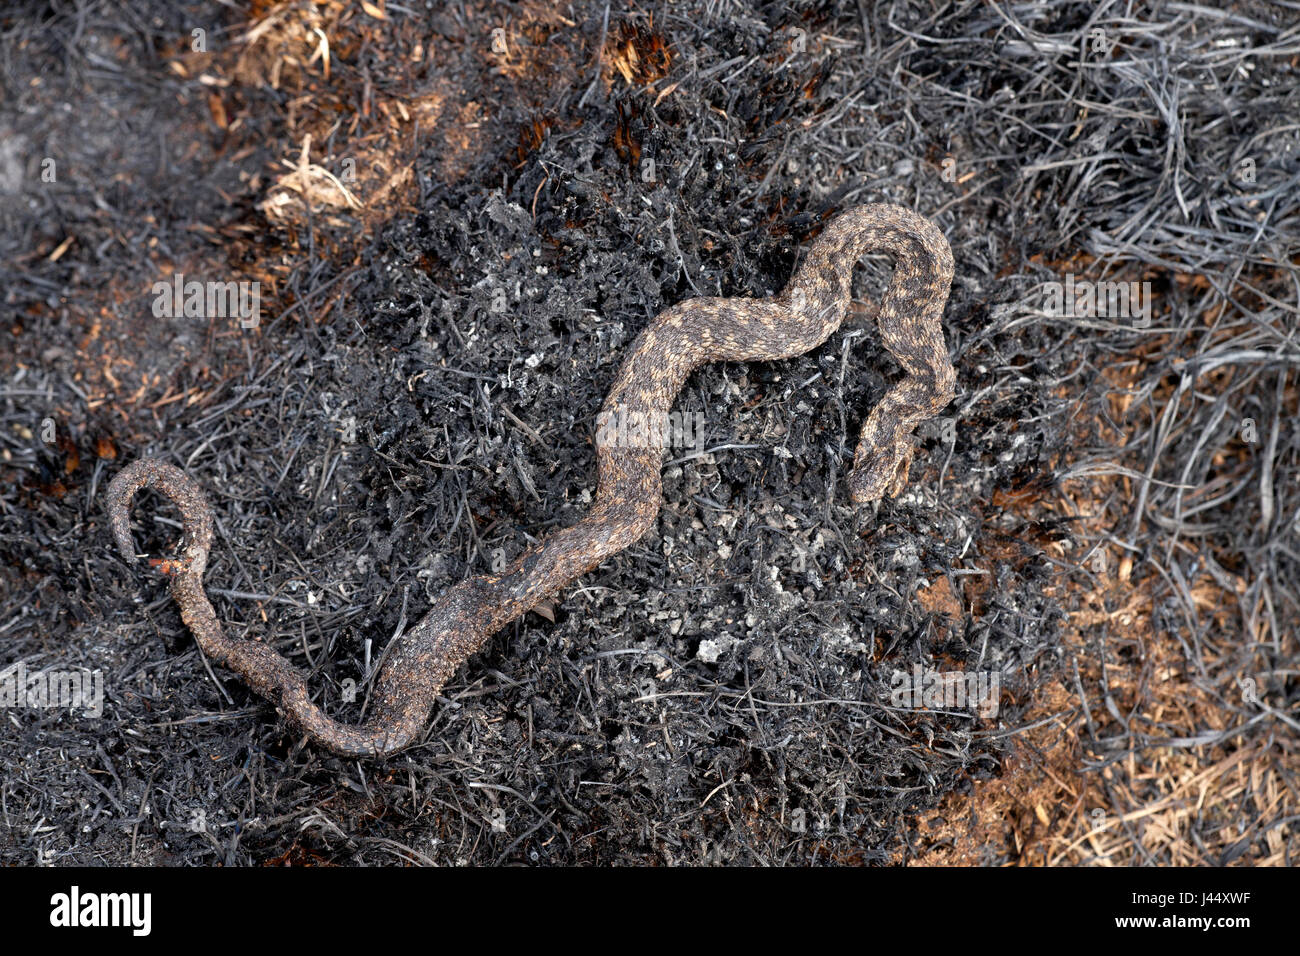 Foto de un viper muertos por un incendio heath Foto de stock